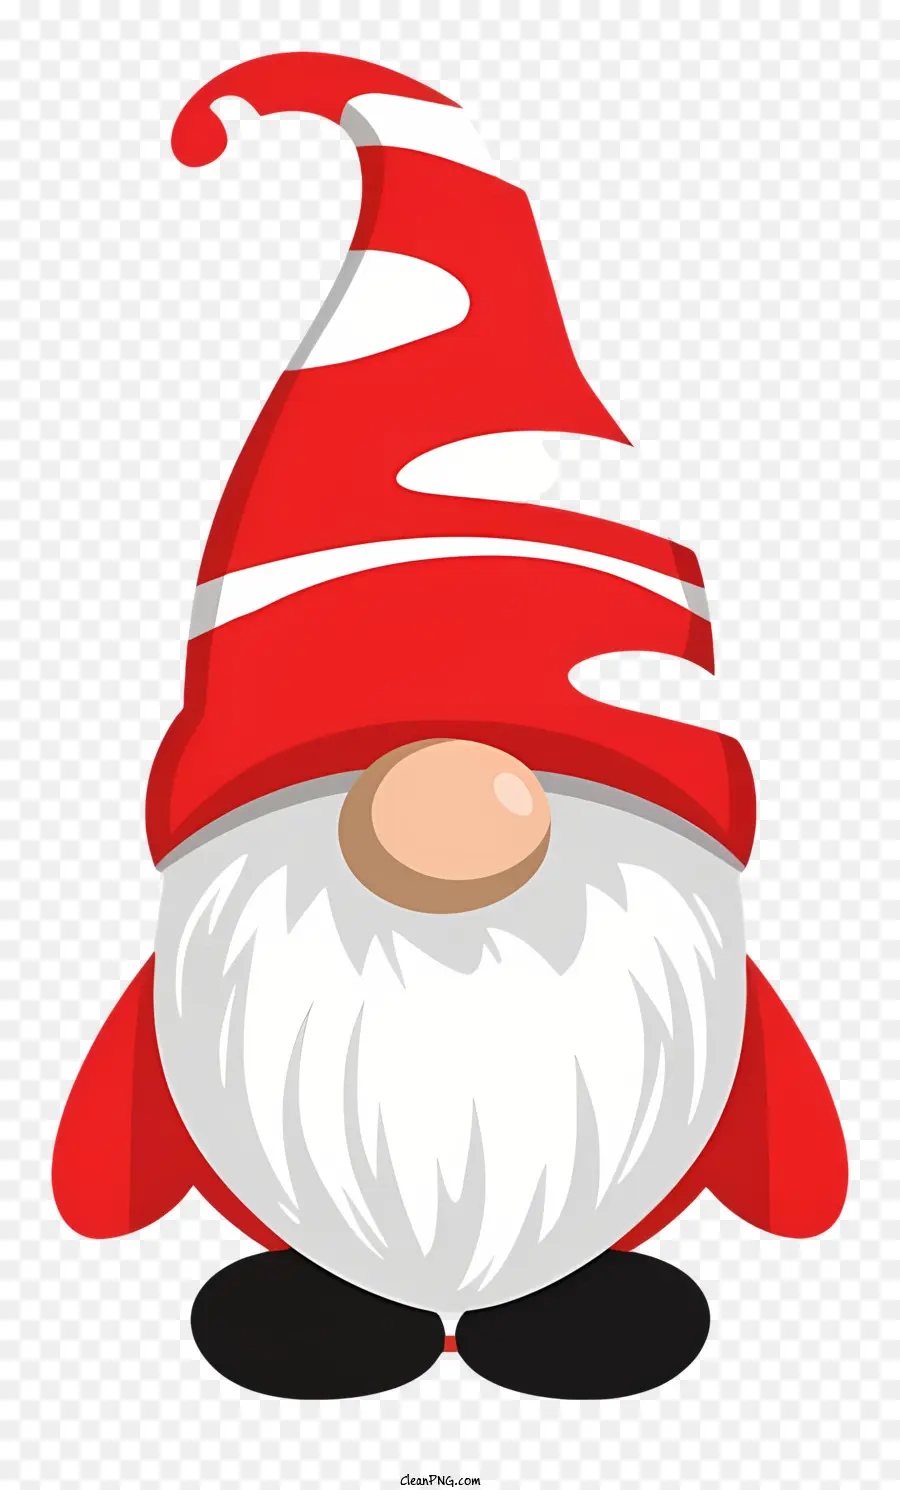 Gnom rot und weiß gestreiften Hut weißer Bart Rundkörper kleine Arme und Beine - Lächelnder Gnom mit gestreiften Hut und schelmischem Gesicht